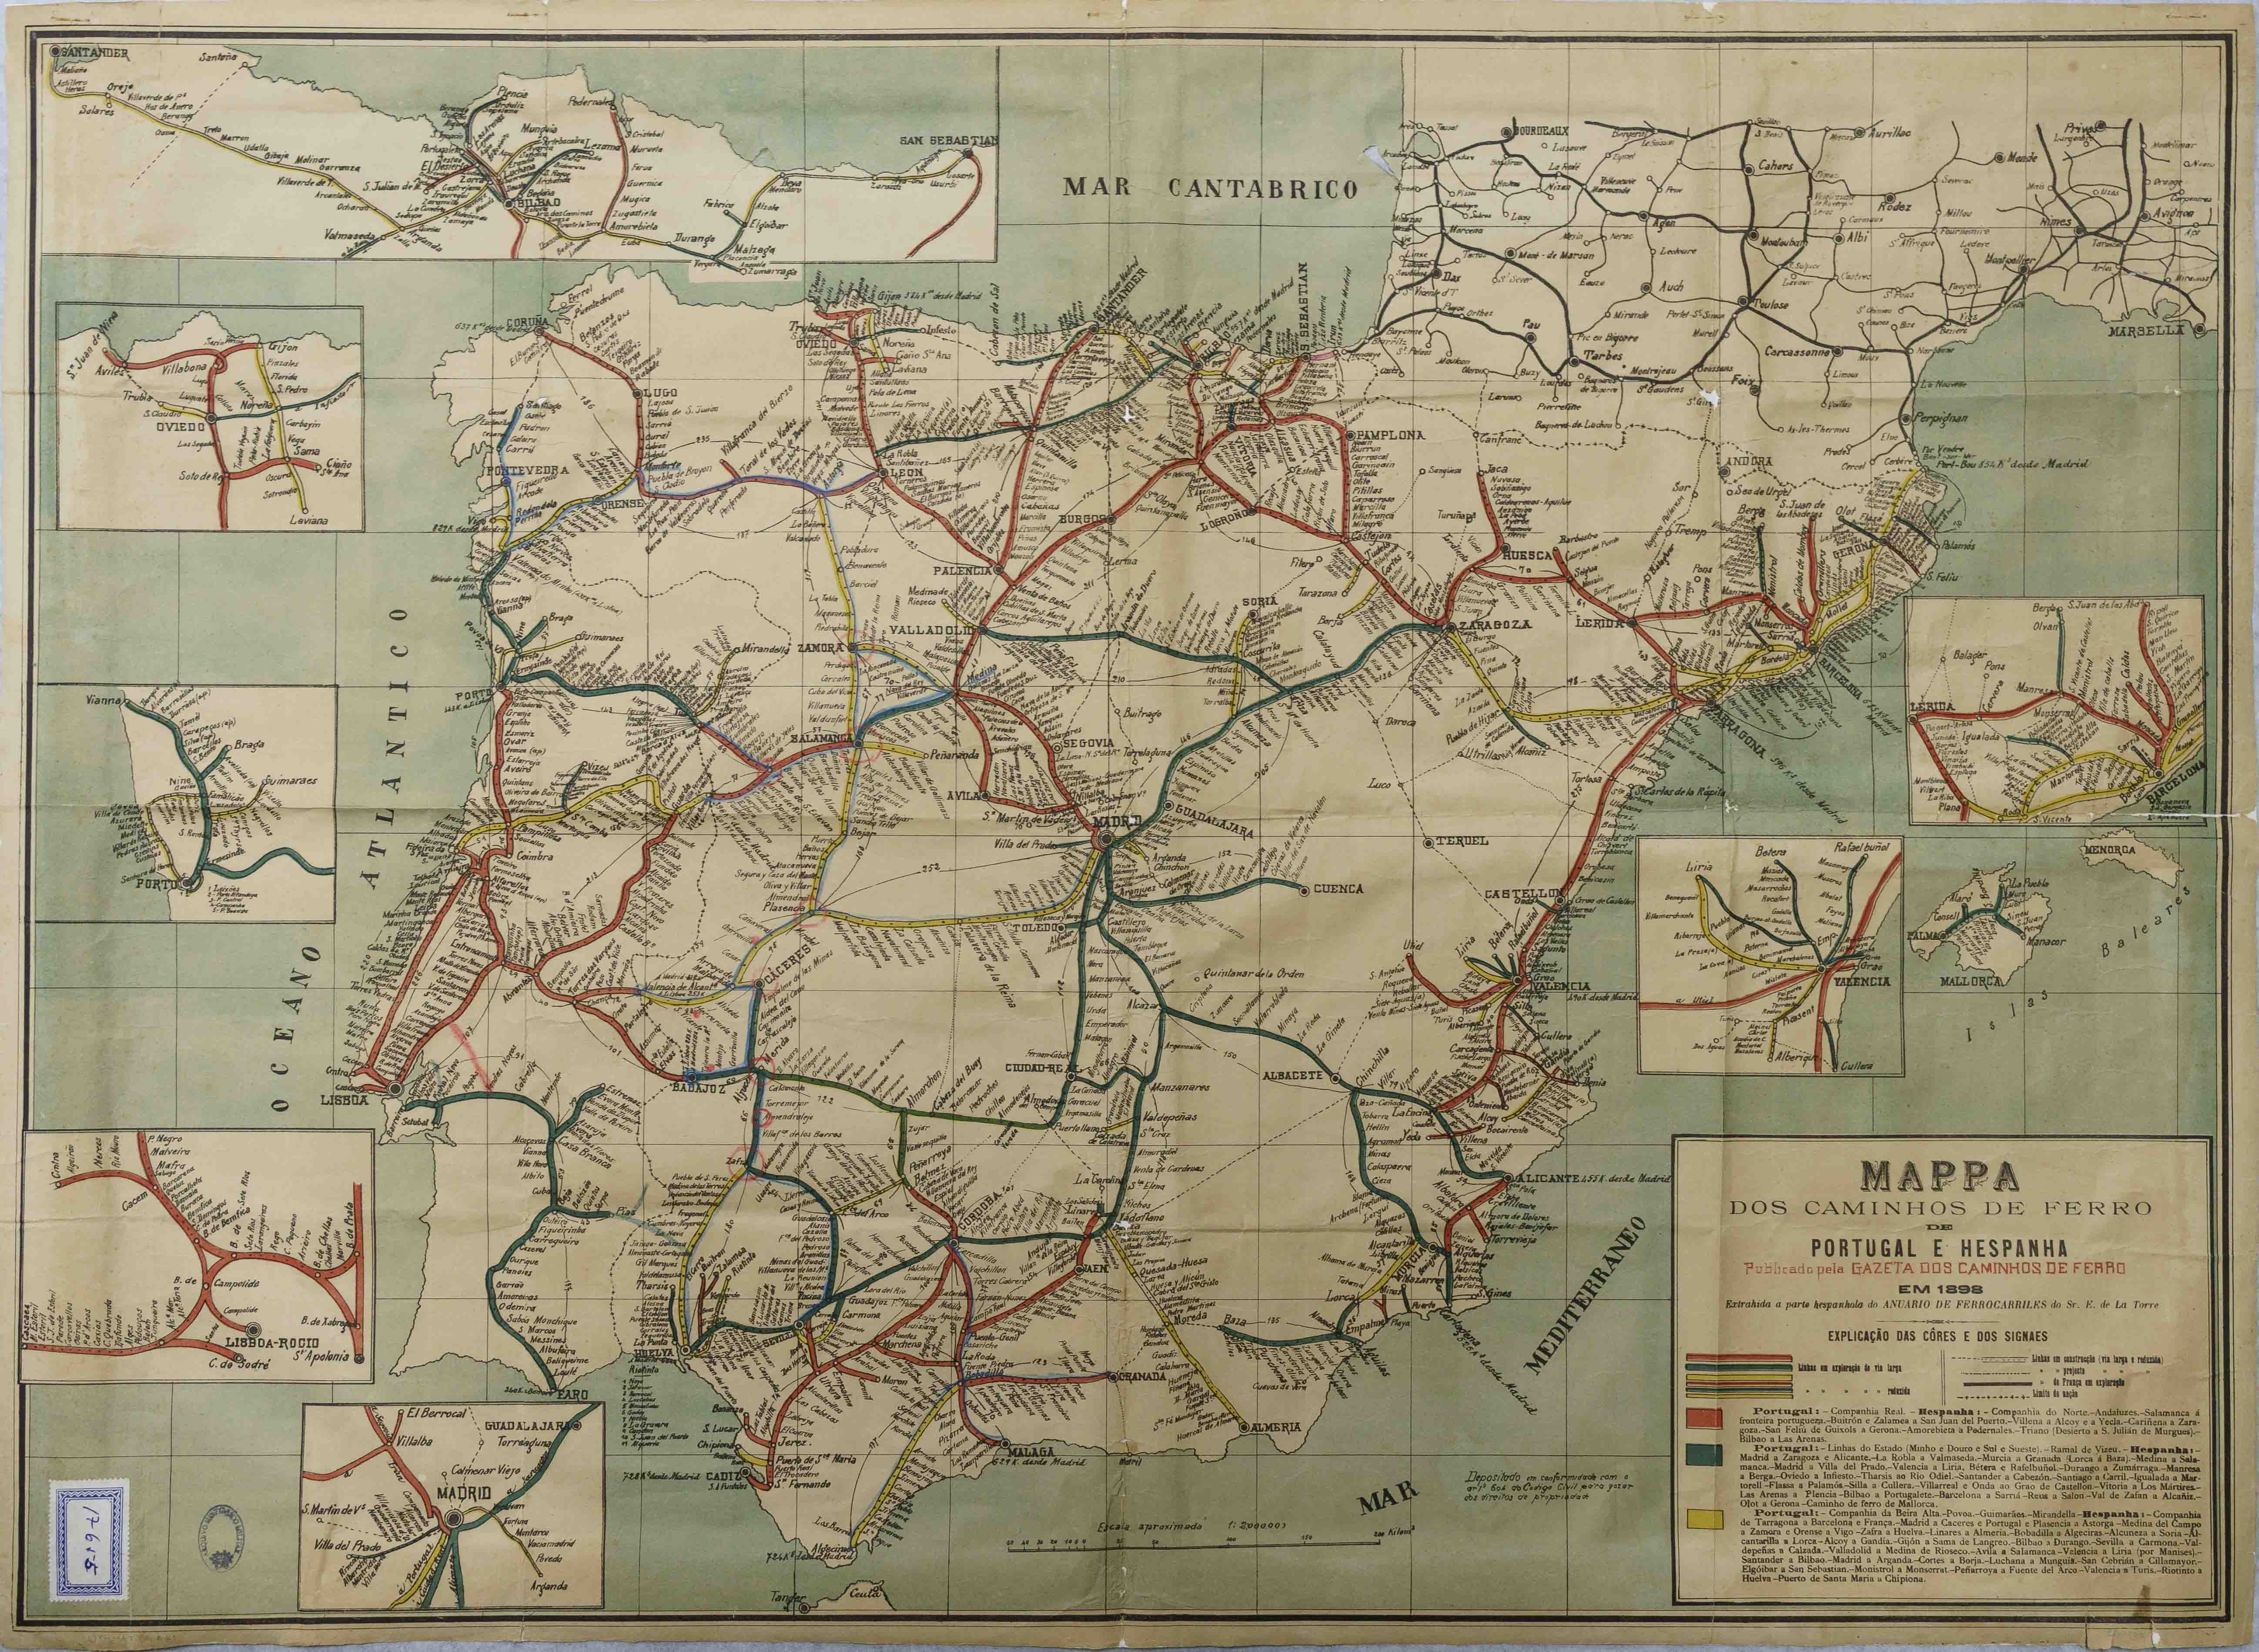 Mappa dos Caminhos de Ferro de Portugal e Hespanha